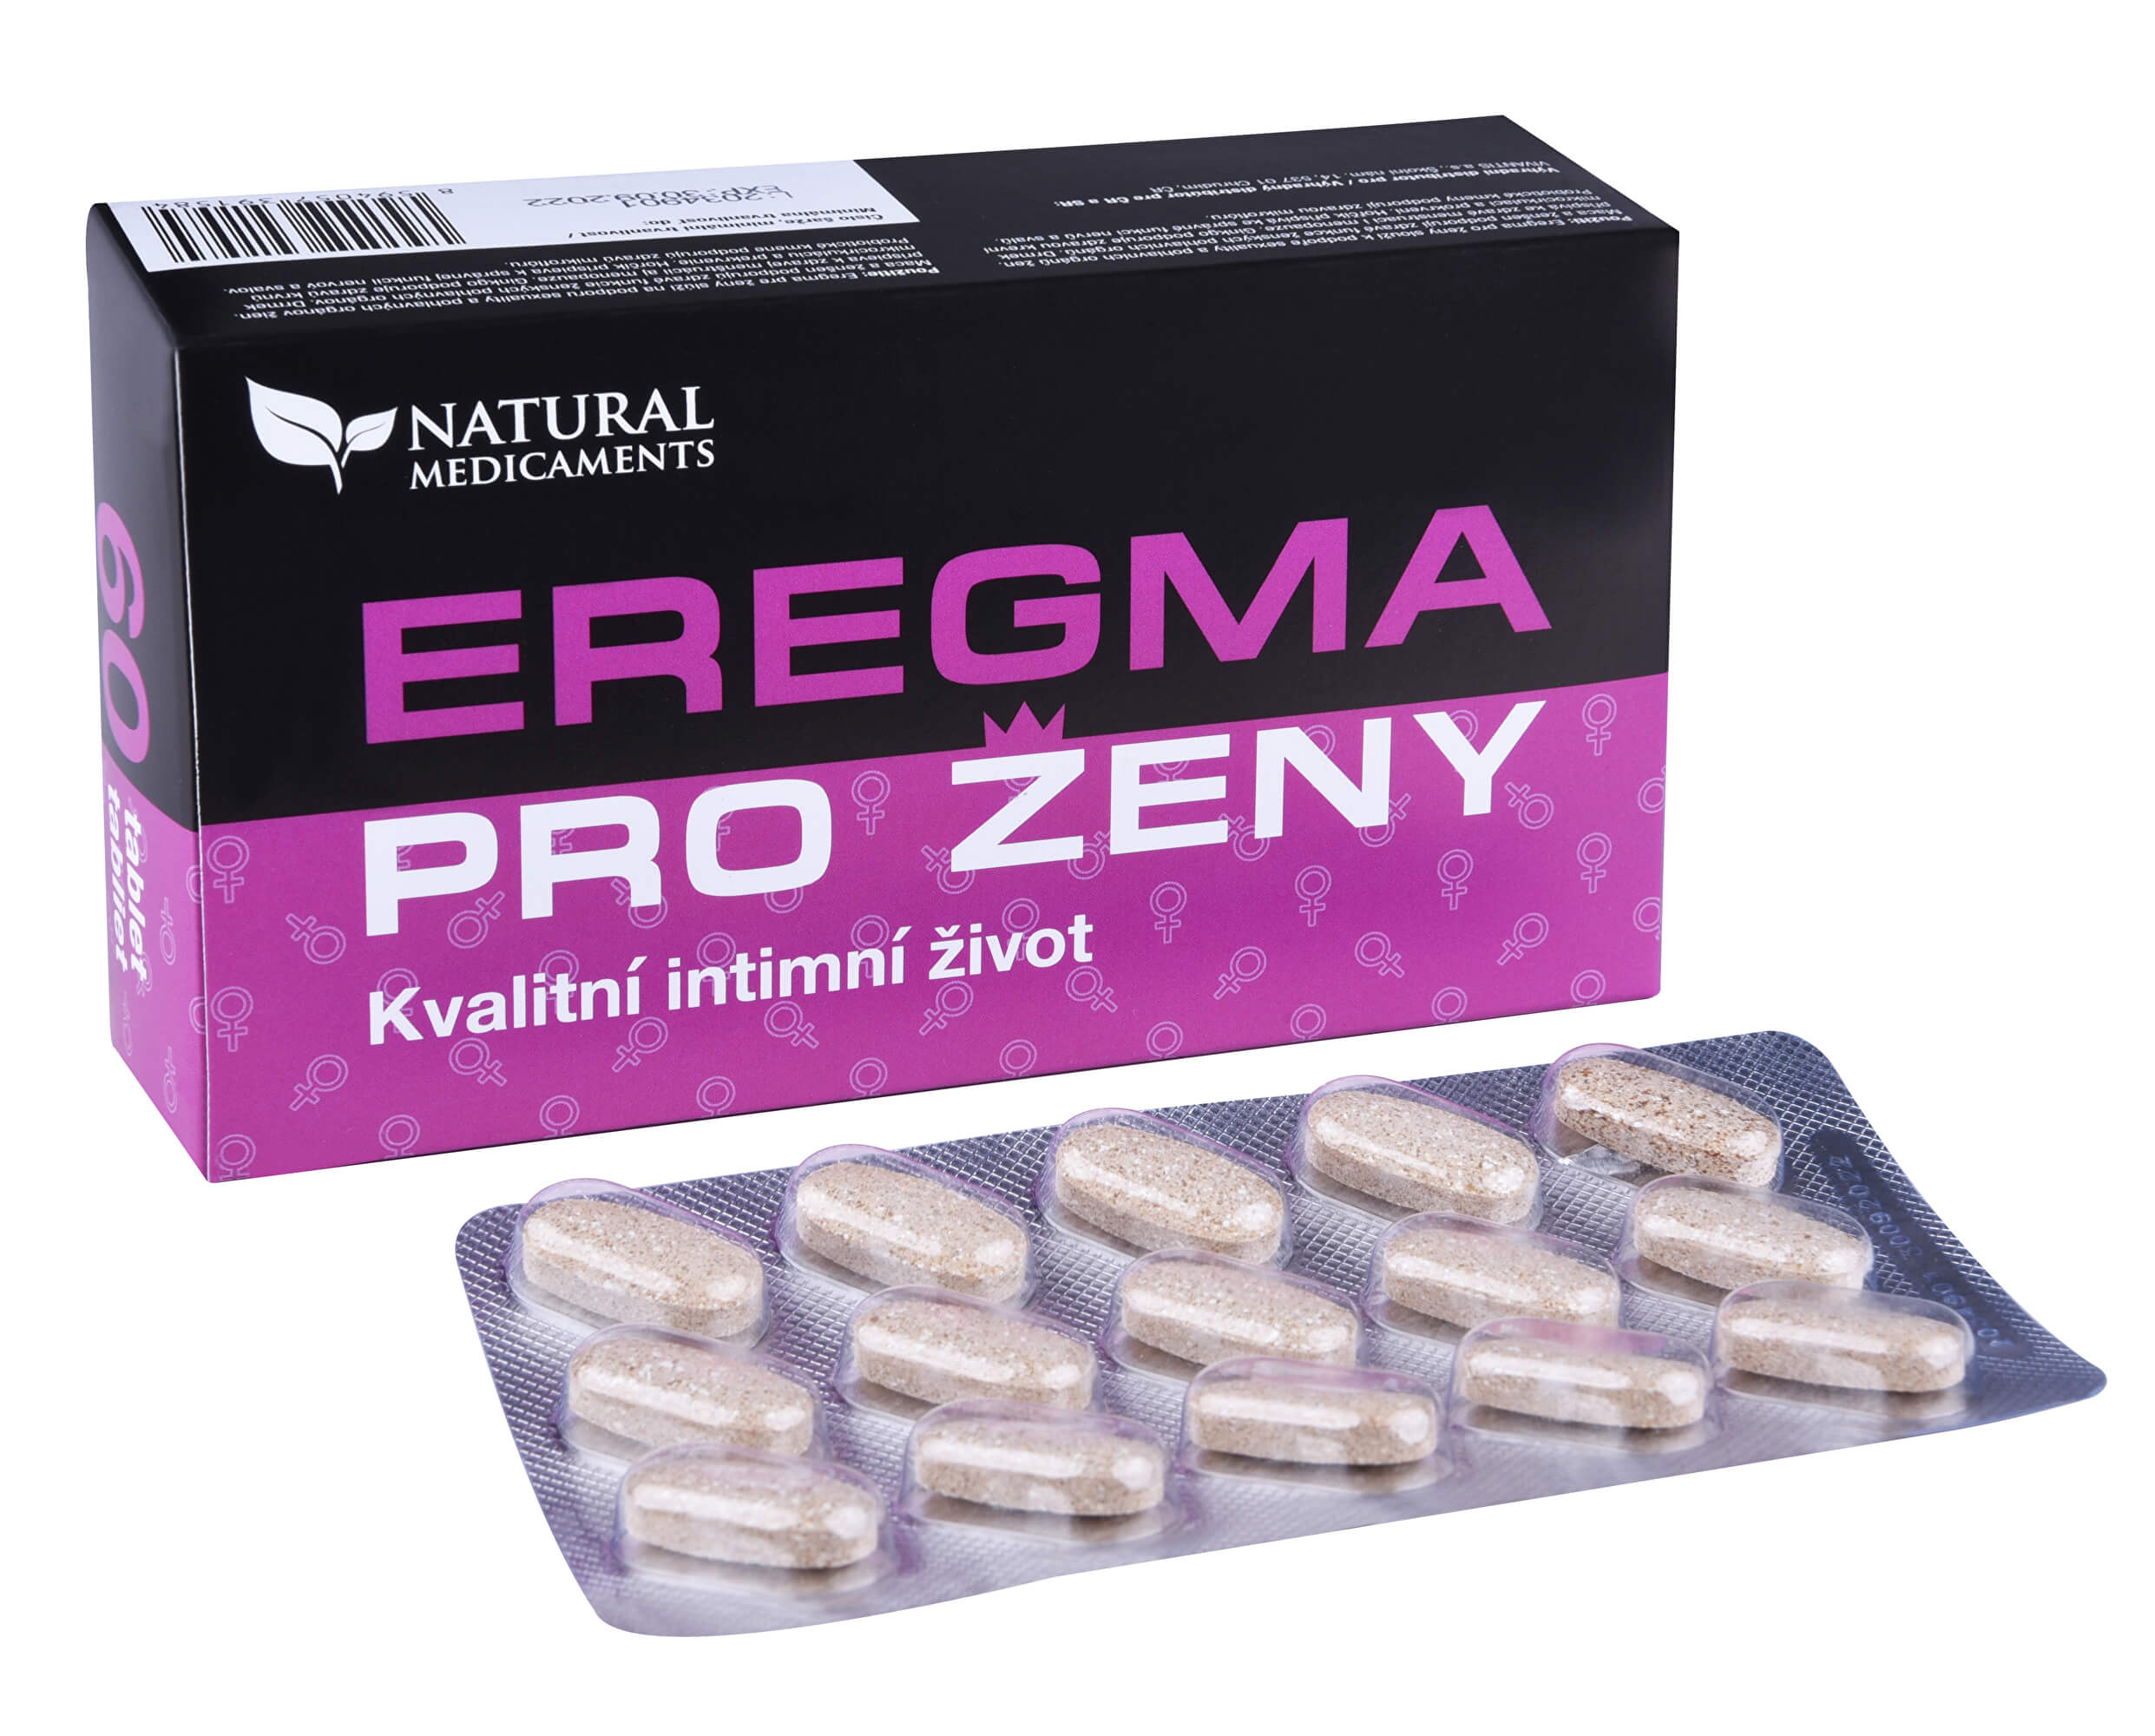 Zobrazit detail výrobku Natural Medicaments Eregma pro ženy 60 tablet + 2 měsíce na vrácení zboží